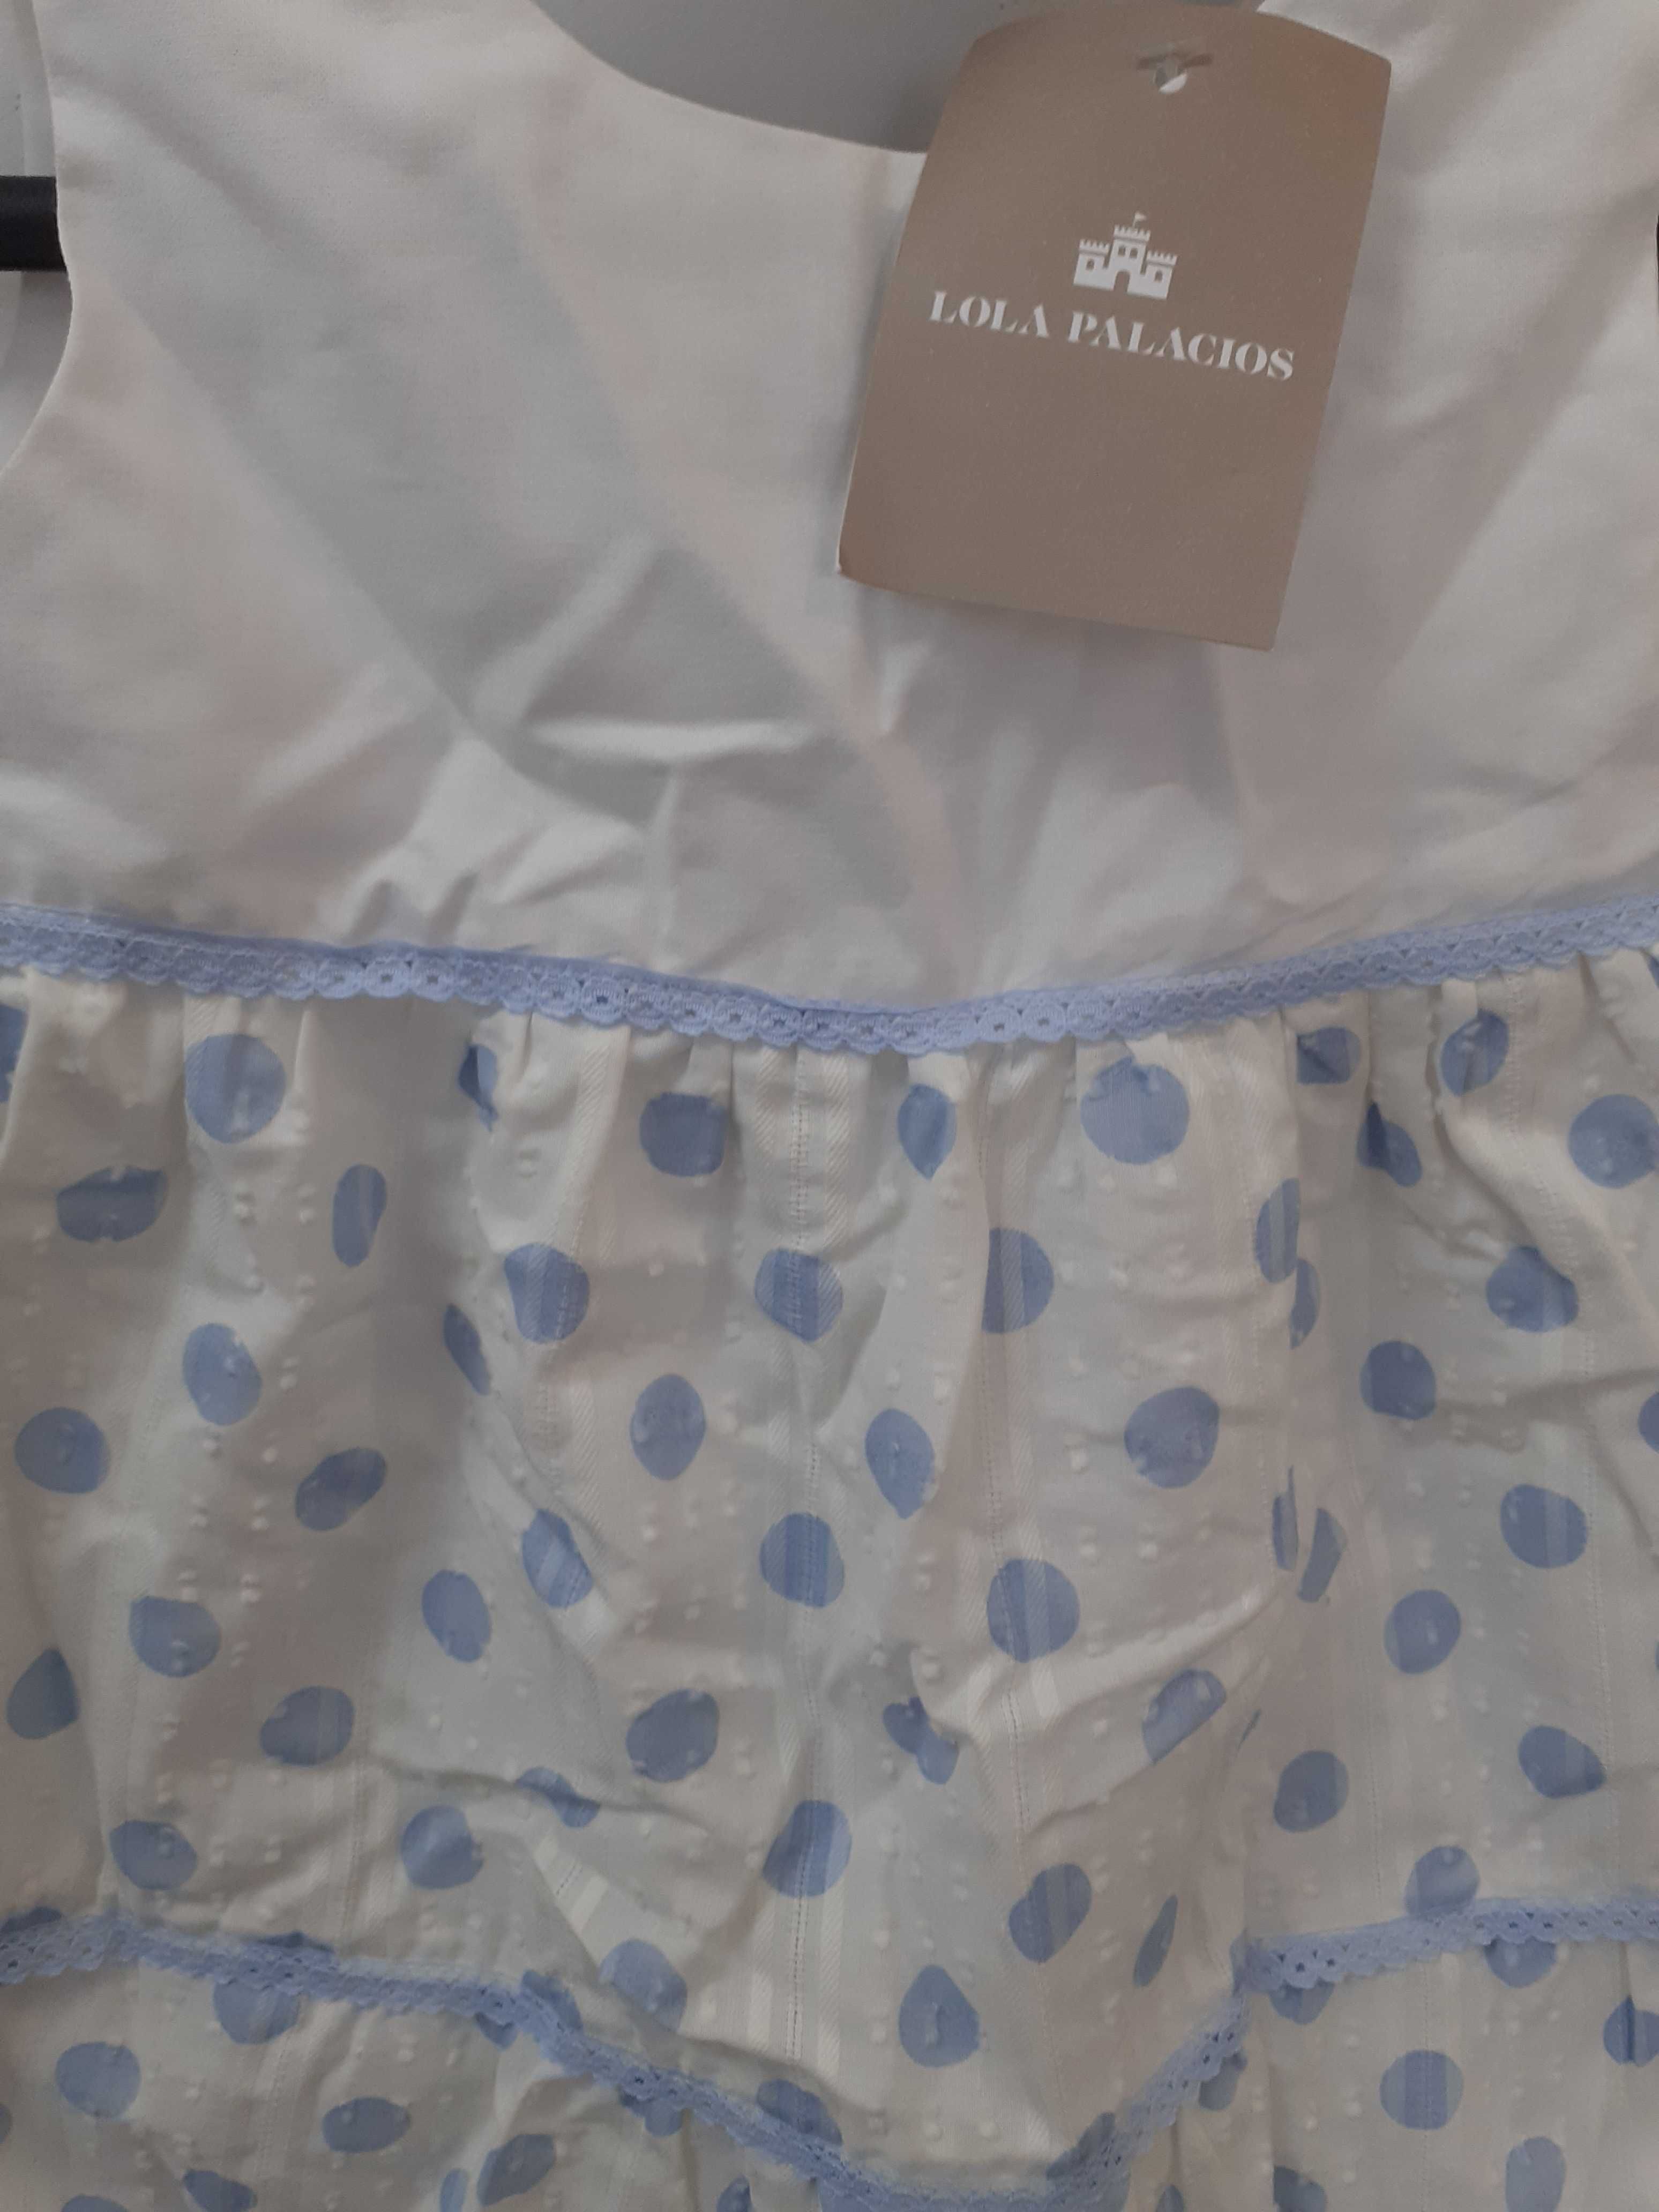 Vand rochie pentru fetita varsta 2 ani,firma lola palacios spania